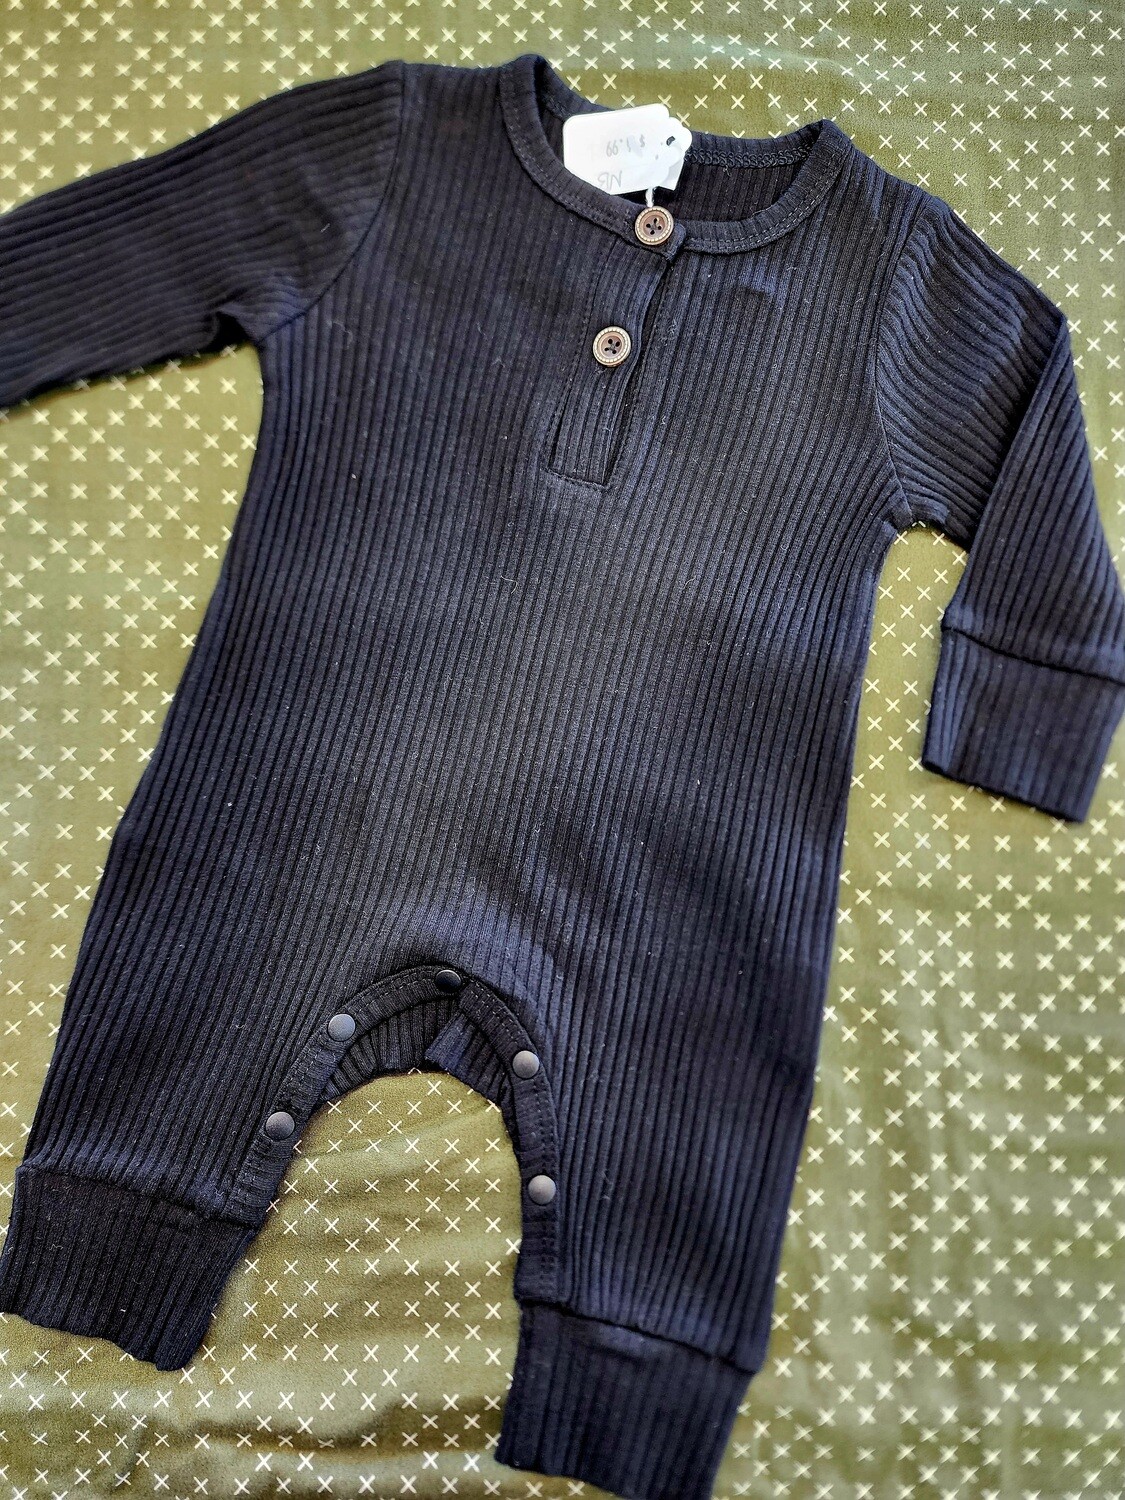 Black Baby Jumpsuit 3-6 Month